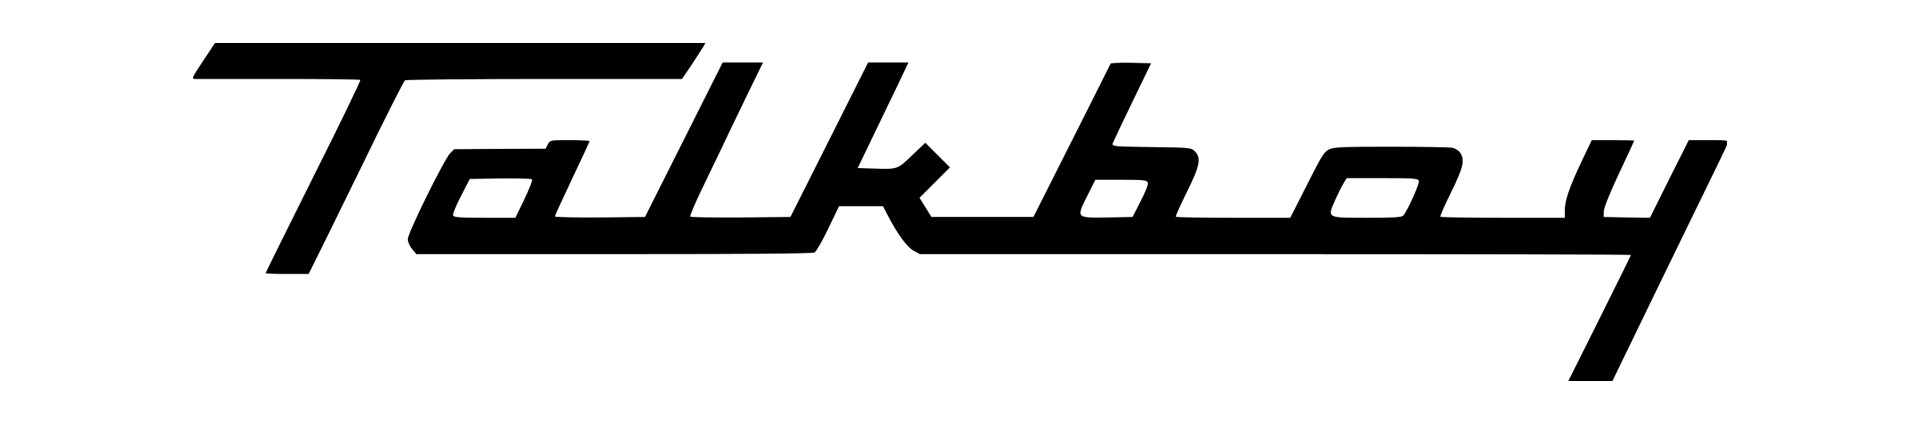 Talkboy logo